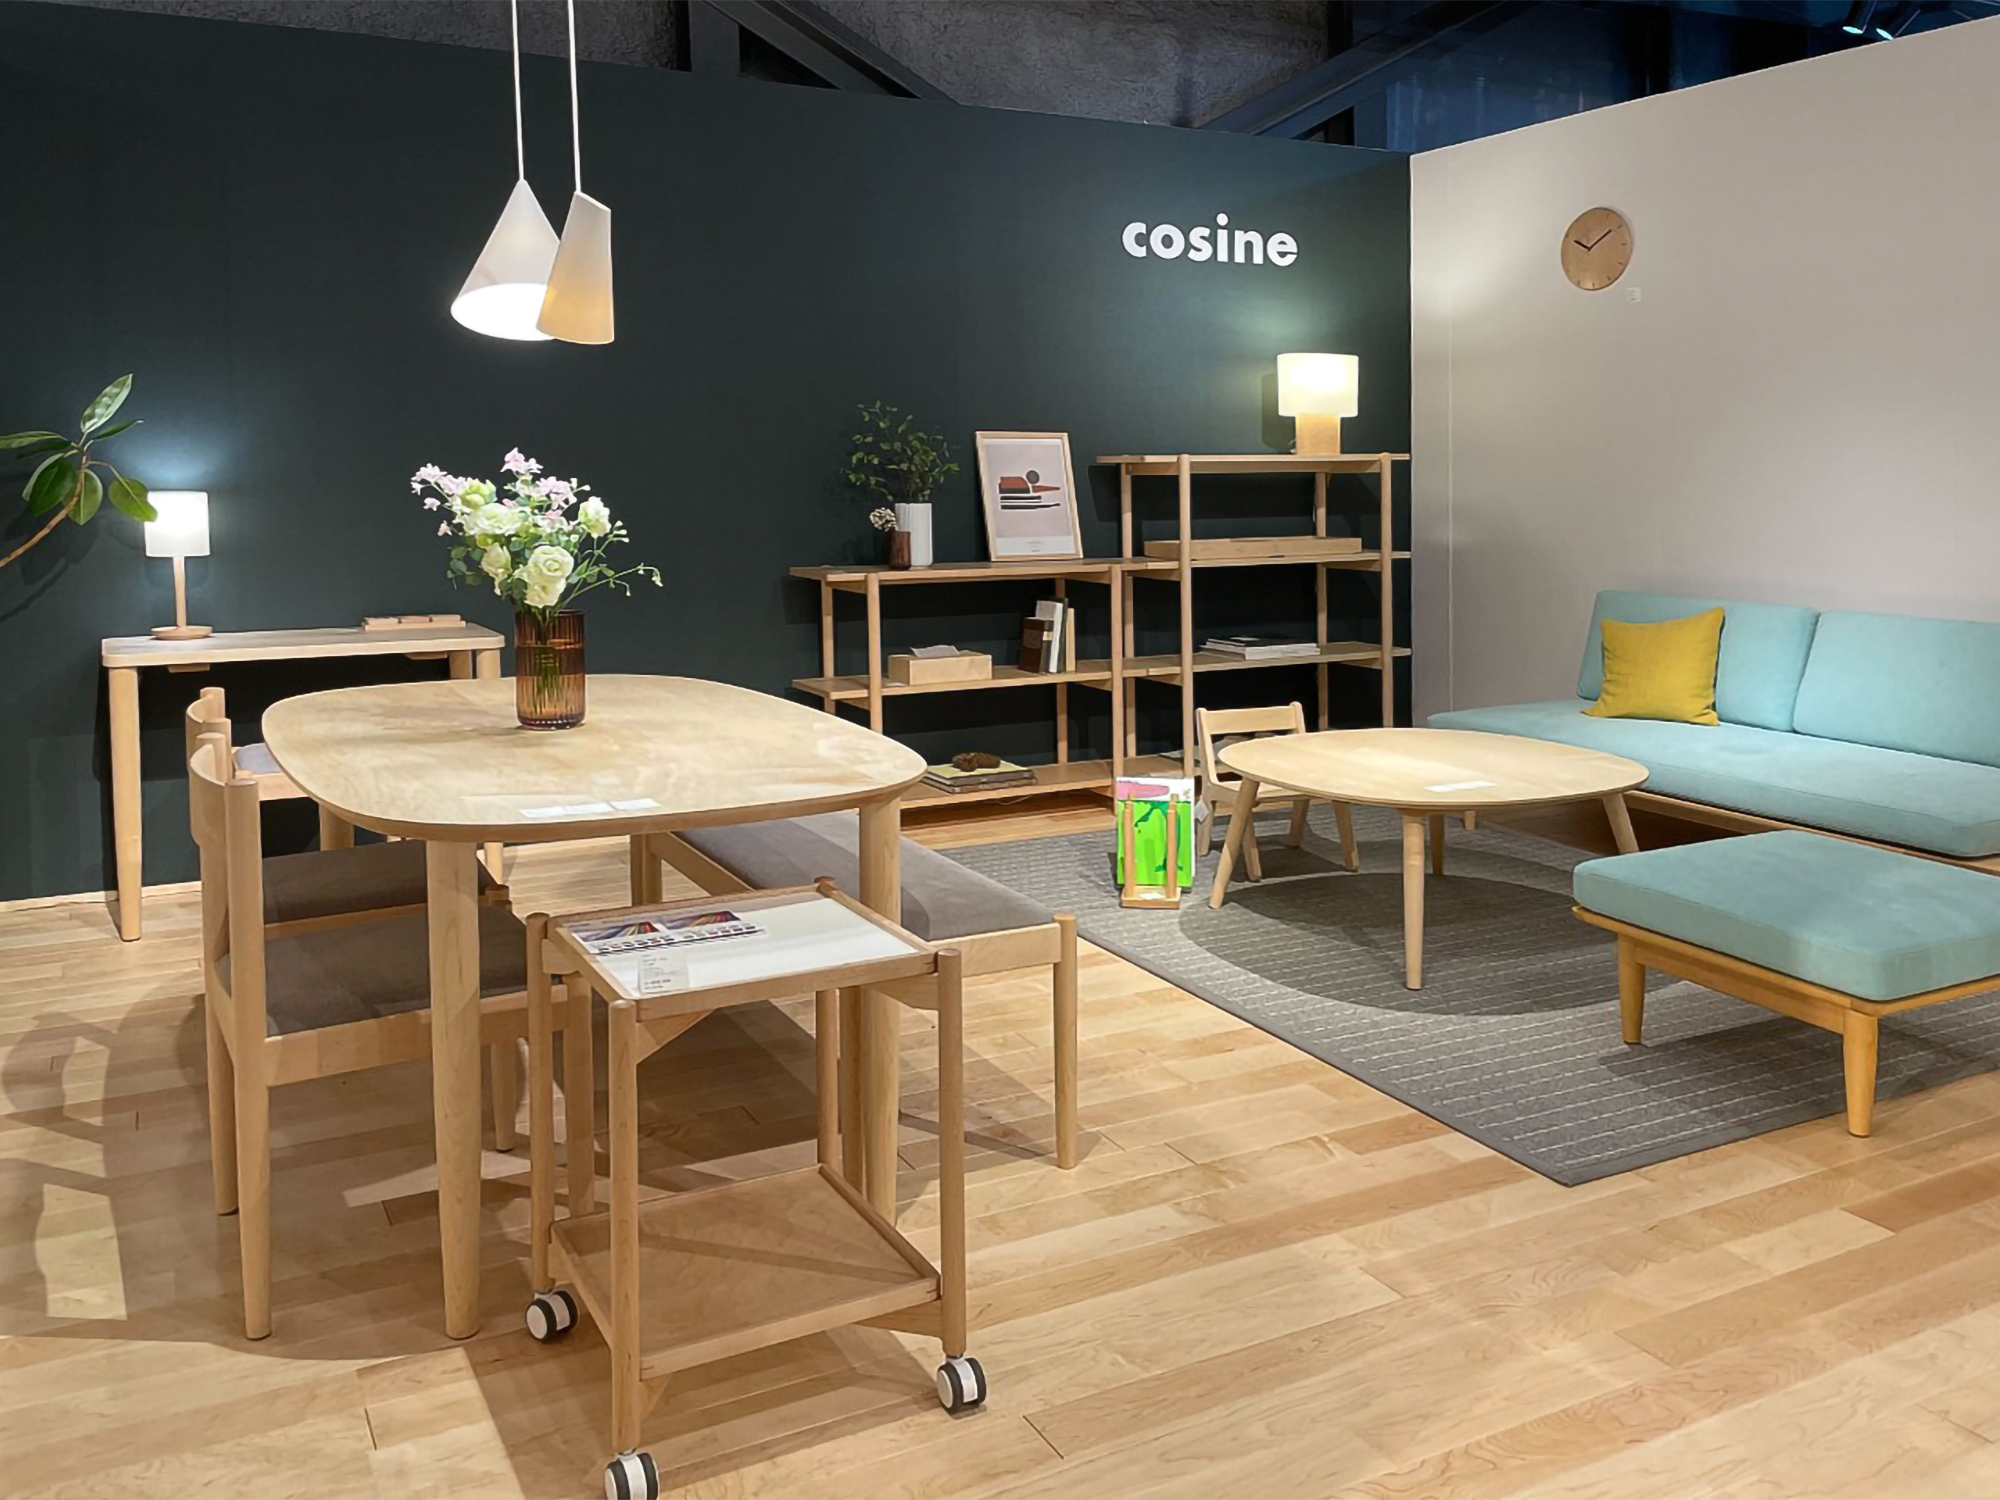 北海道旭川市の家具メーカー「cosine」の旭川デザインセンター内のブースにて。PANTONEの深い緑色をセレクトして作成した「COLORS」が空間のアクセントに。